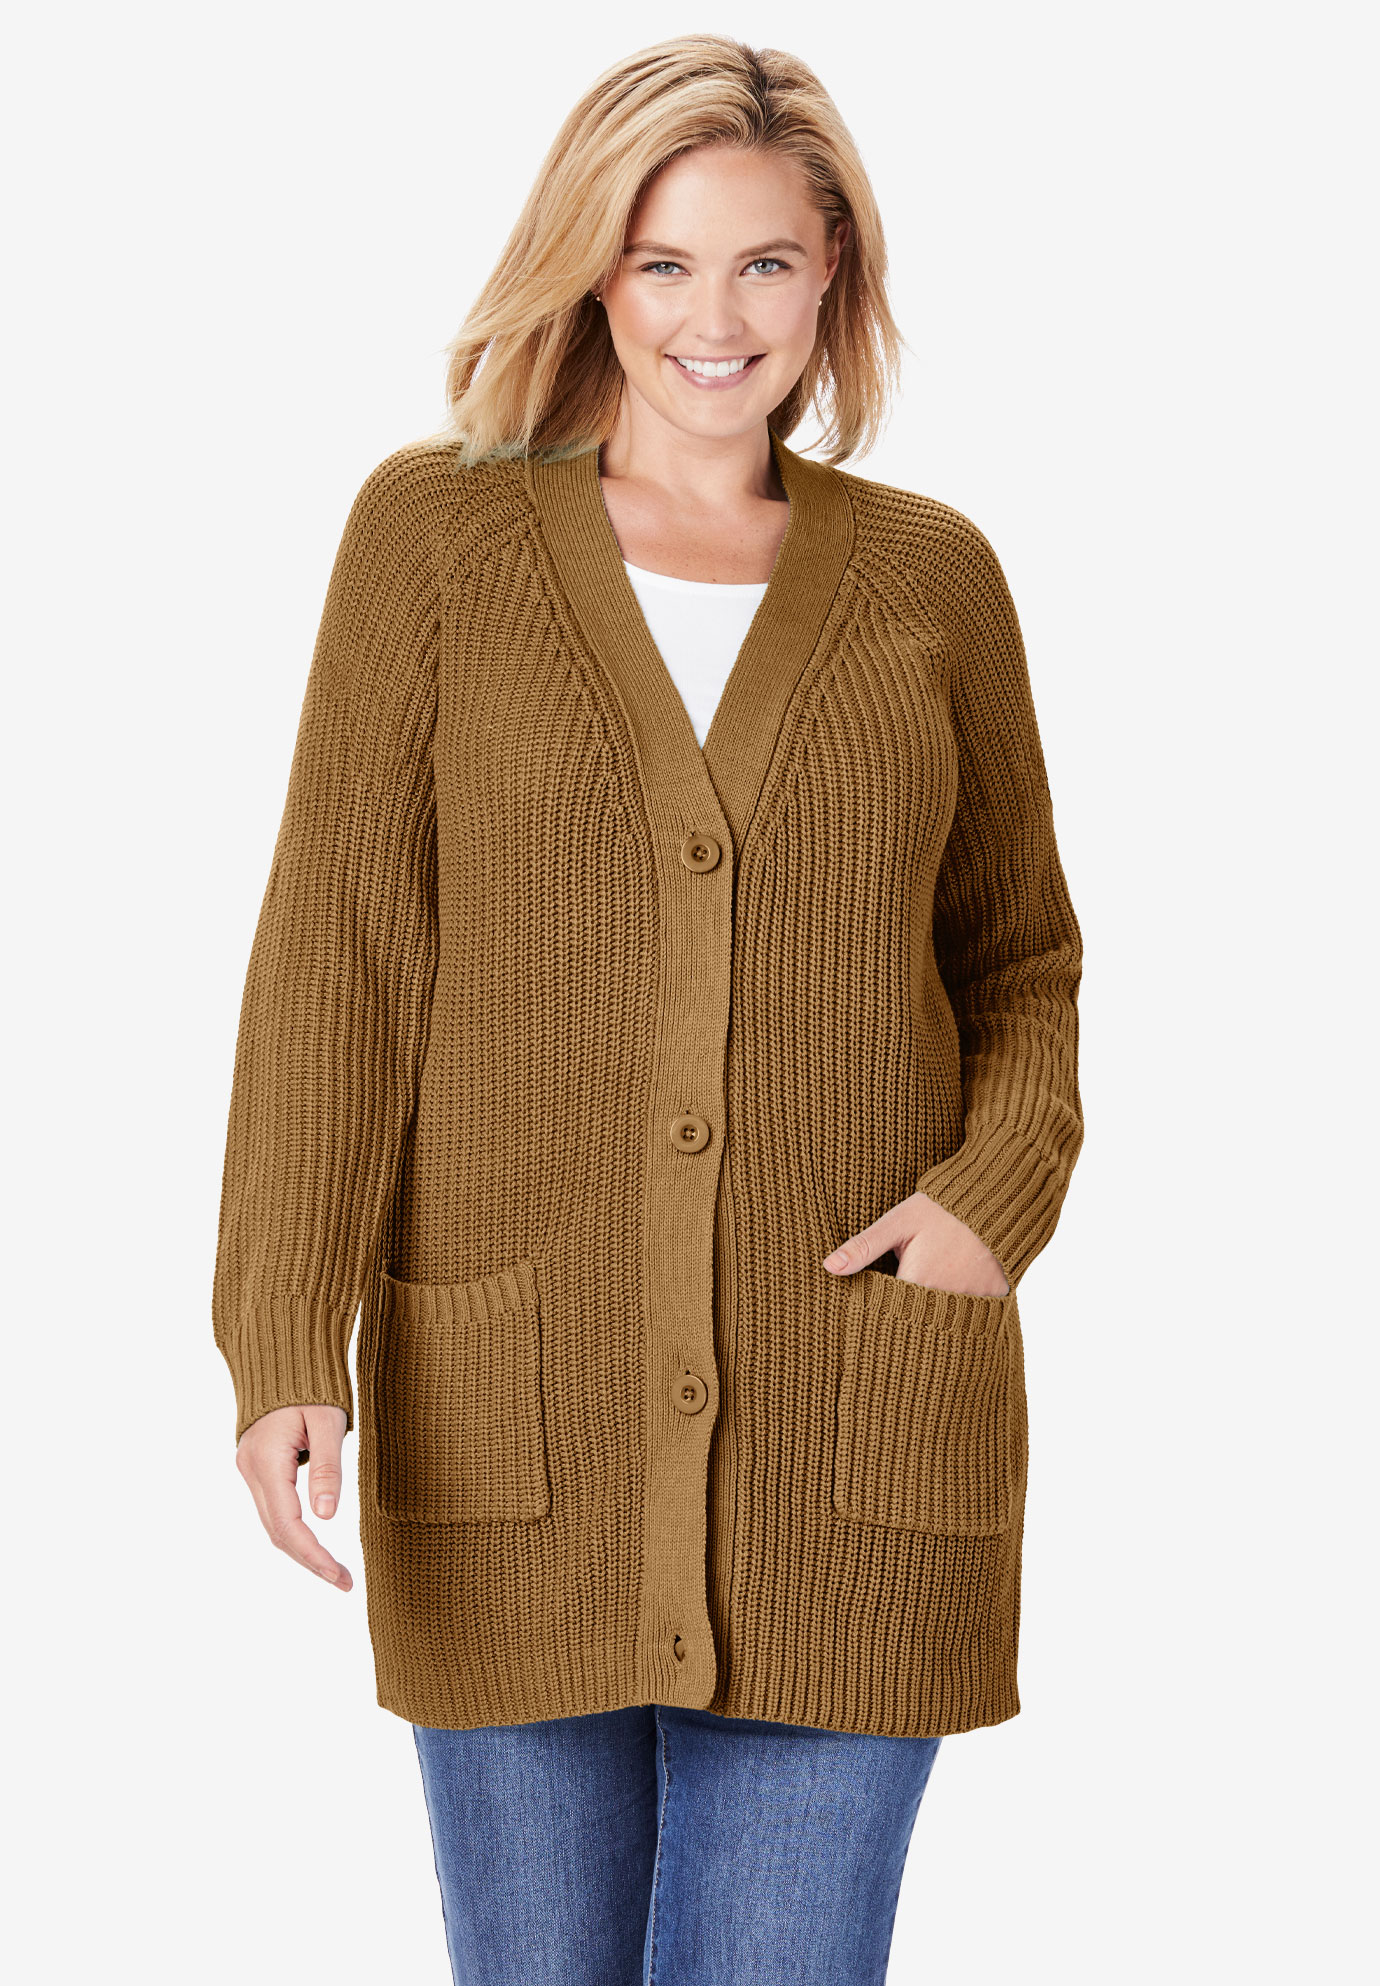 Long-Sleeve Shaker Cardigan Sweater| Plus Size Sweaters & Cardigans | Fullbeauty